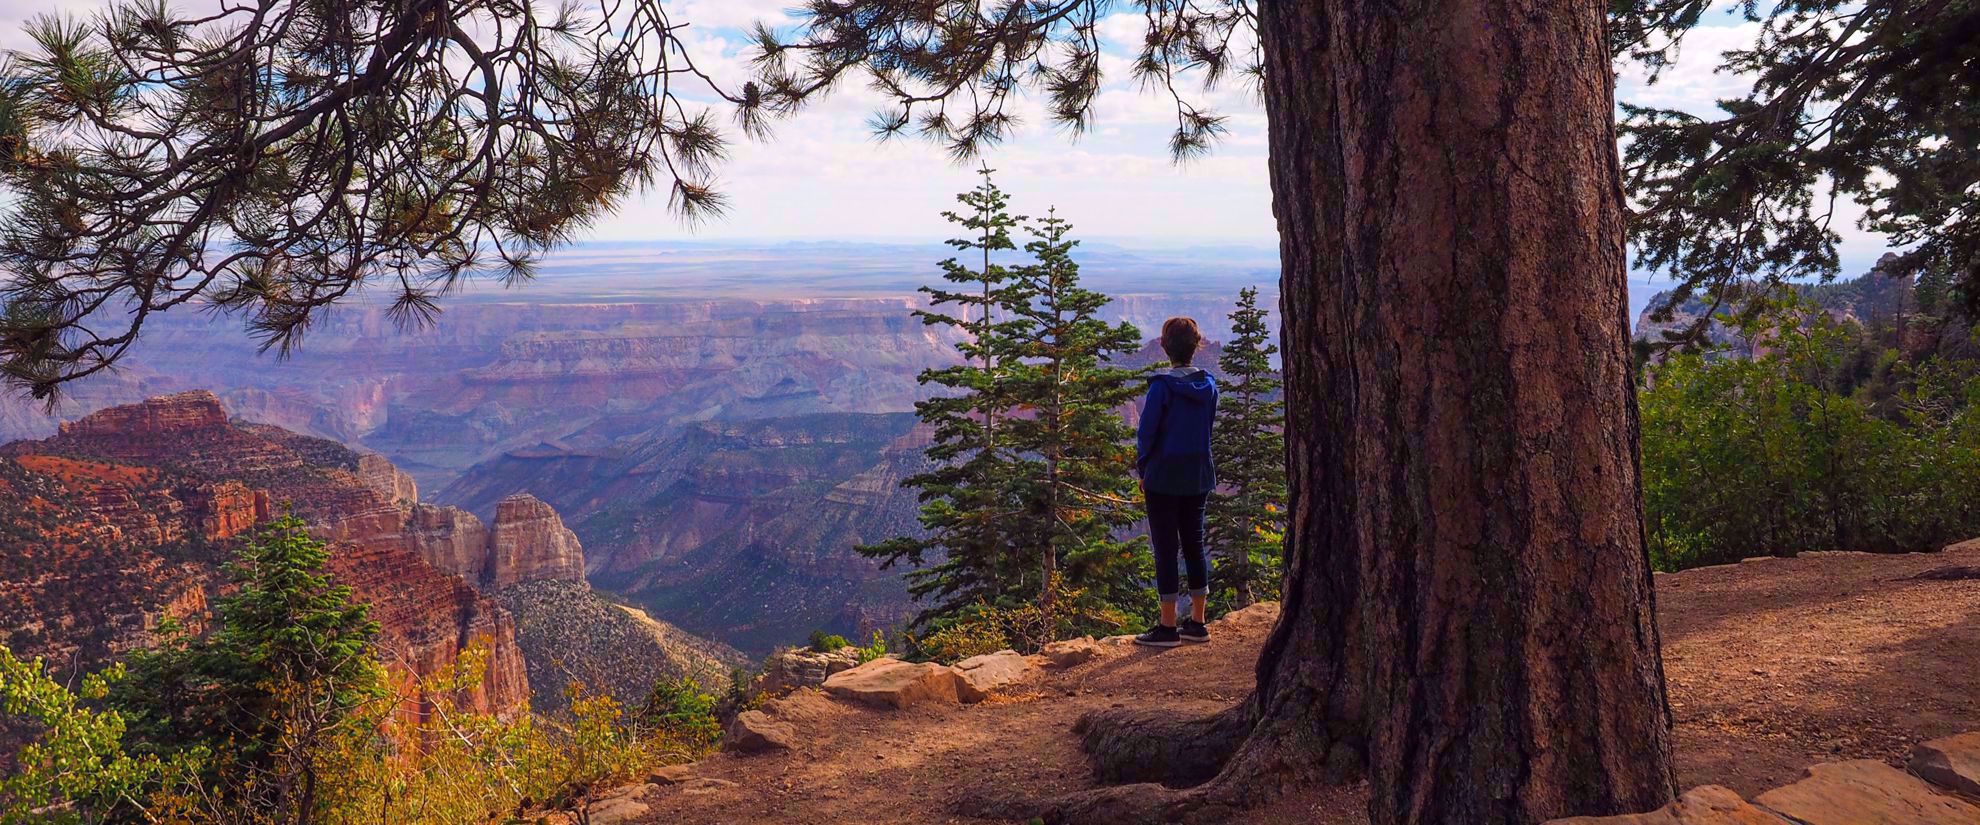 woman admiring view from ridge utah national park